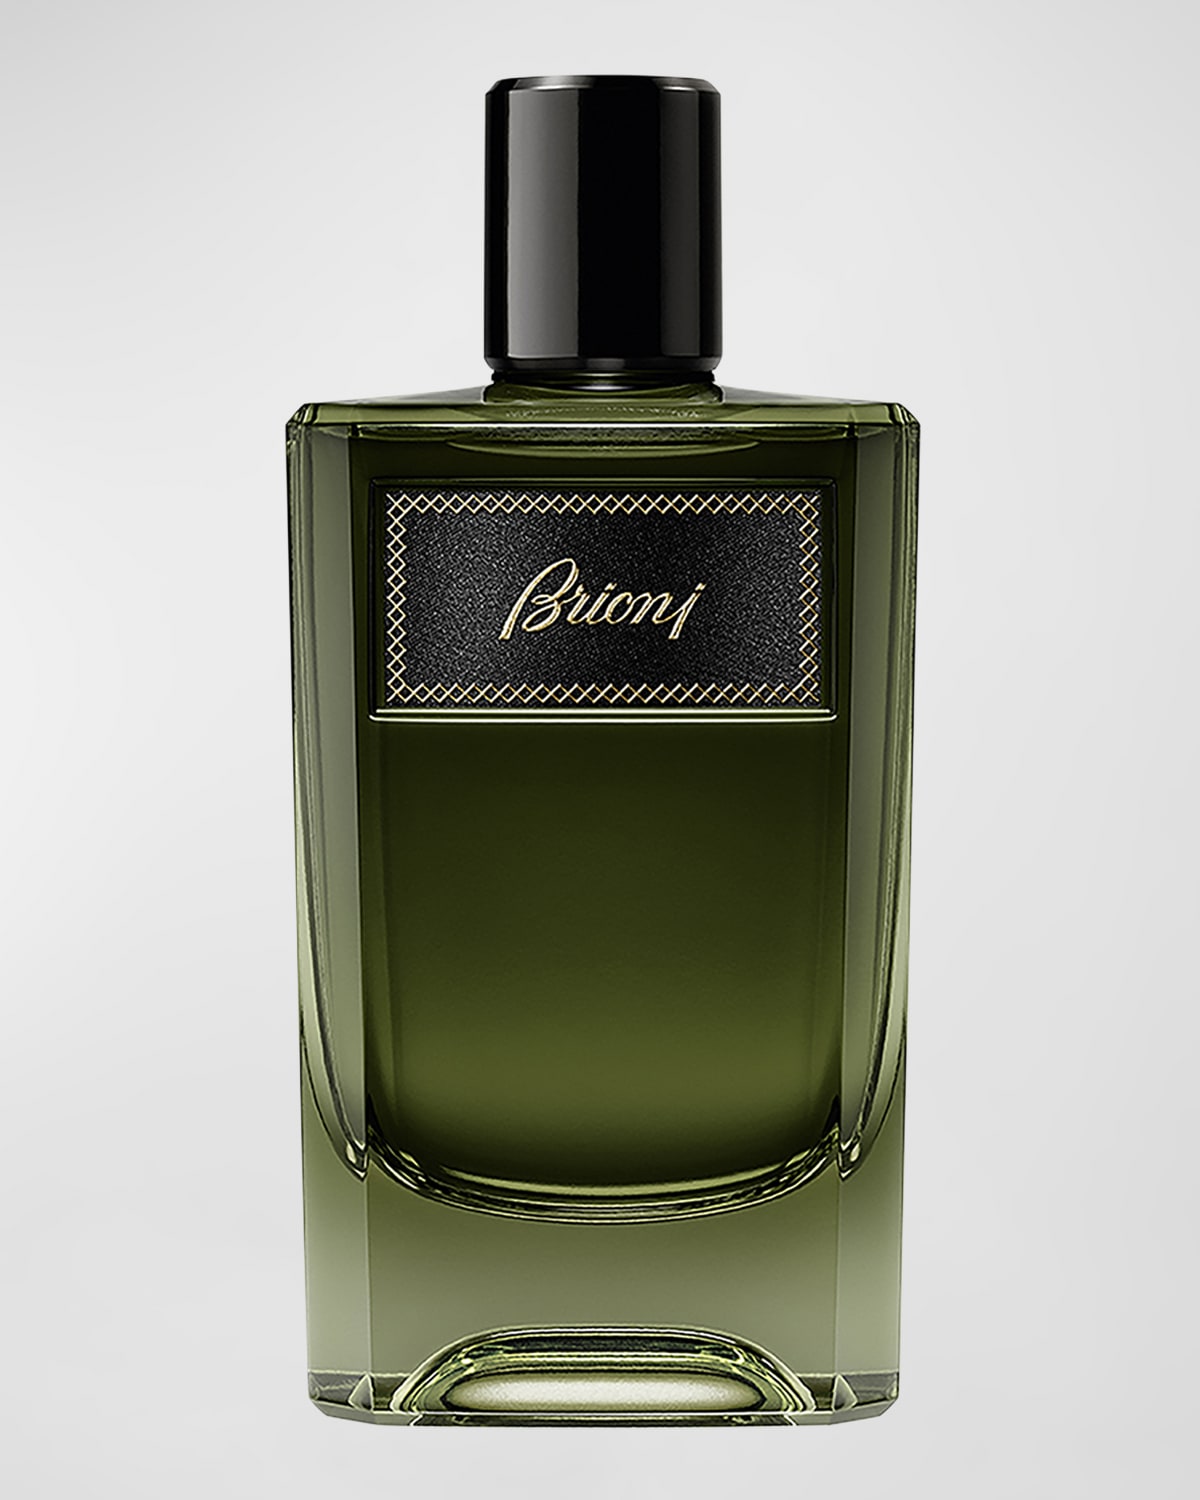 for Men Eau de Parfum, 3.4 oz.